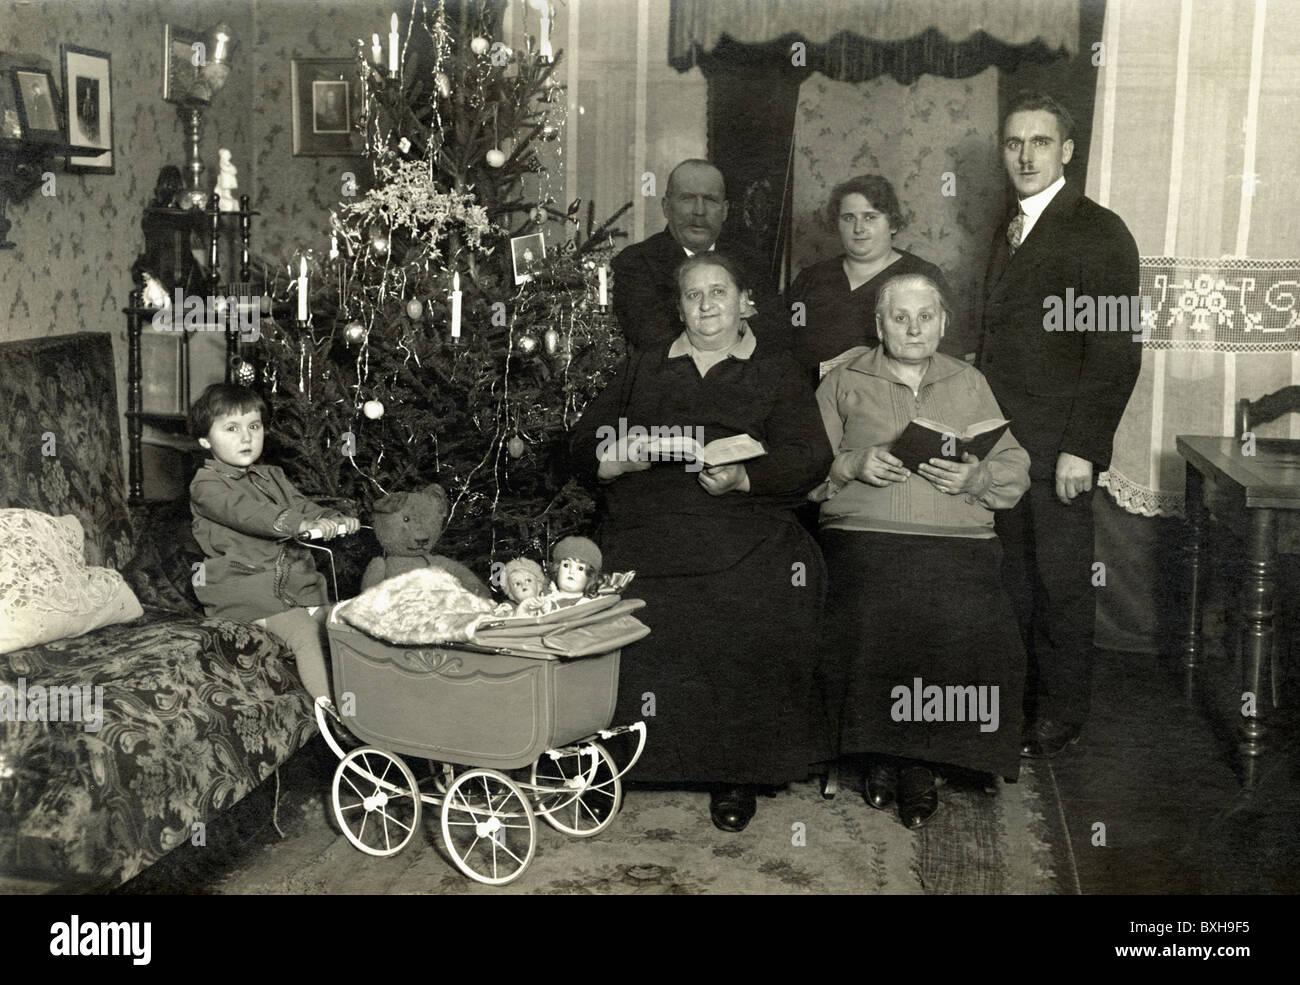 Weihnachten, Heiligabend, Familie unter Weihnachtsbaum, Deutschland, um 1921, Zusatz-Rechte-Clearences-nicht vorhanden Stockfoto